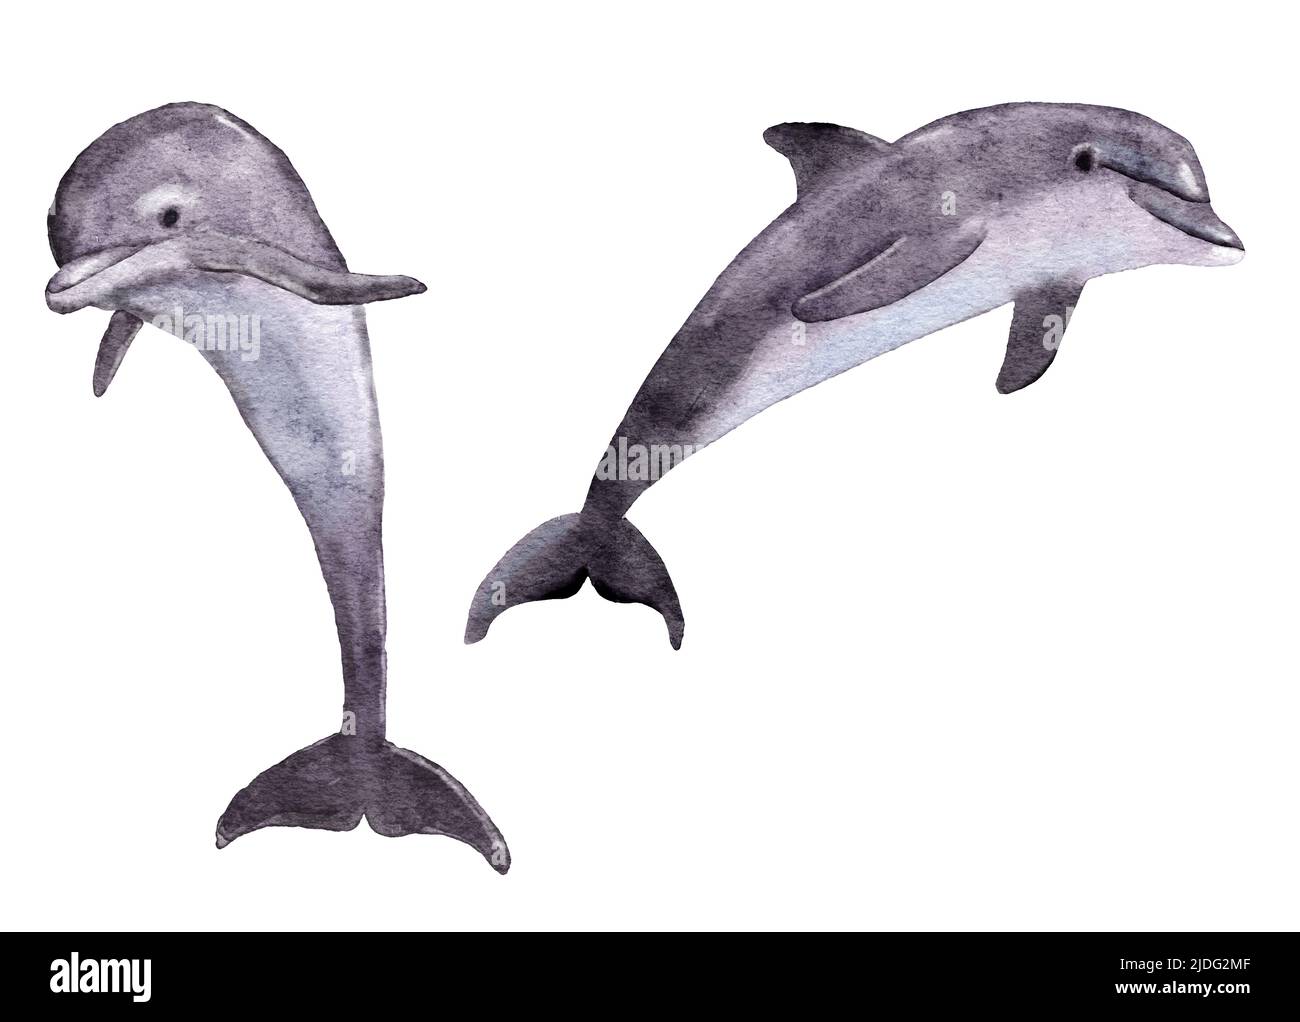 Illustration aquarelle des dauphins de l'océan, des mammifères marins aquatiques sous-marins. Écologie environnement faune, nature sauvage espèces menacées Banque D'Images